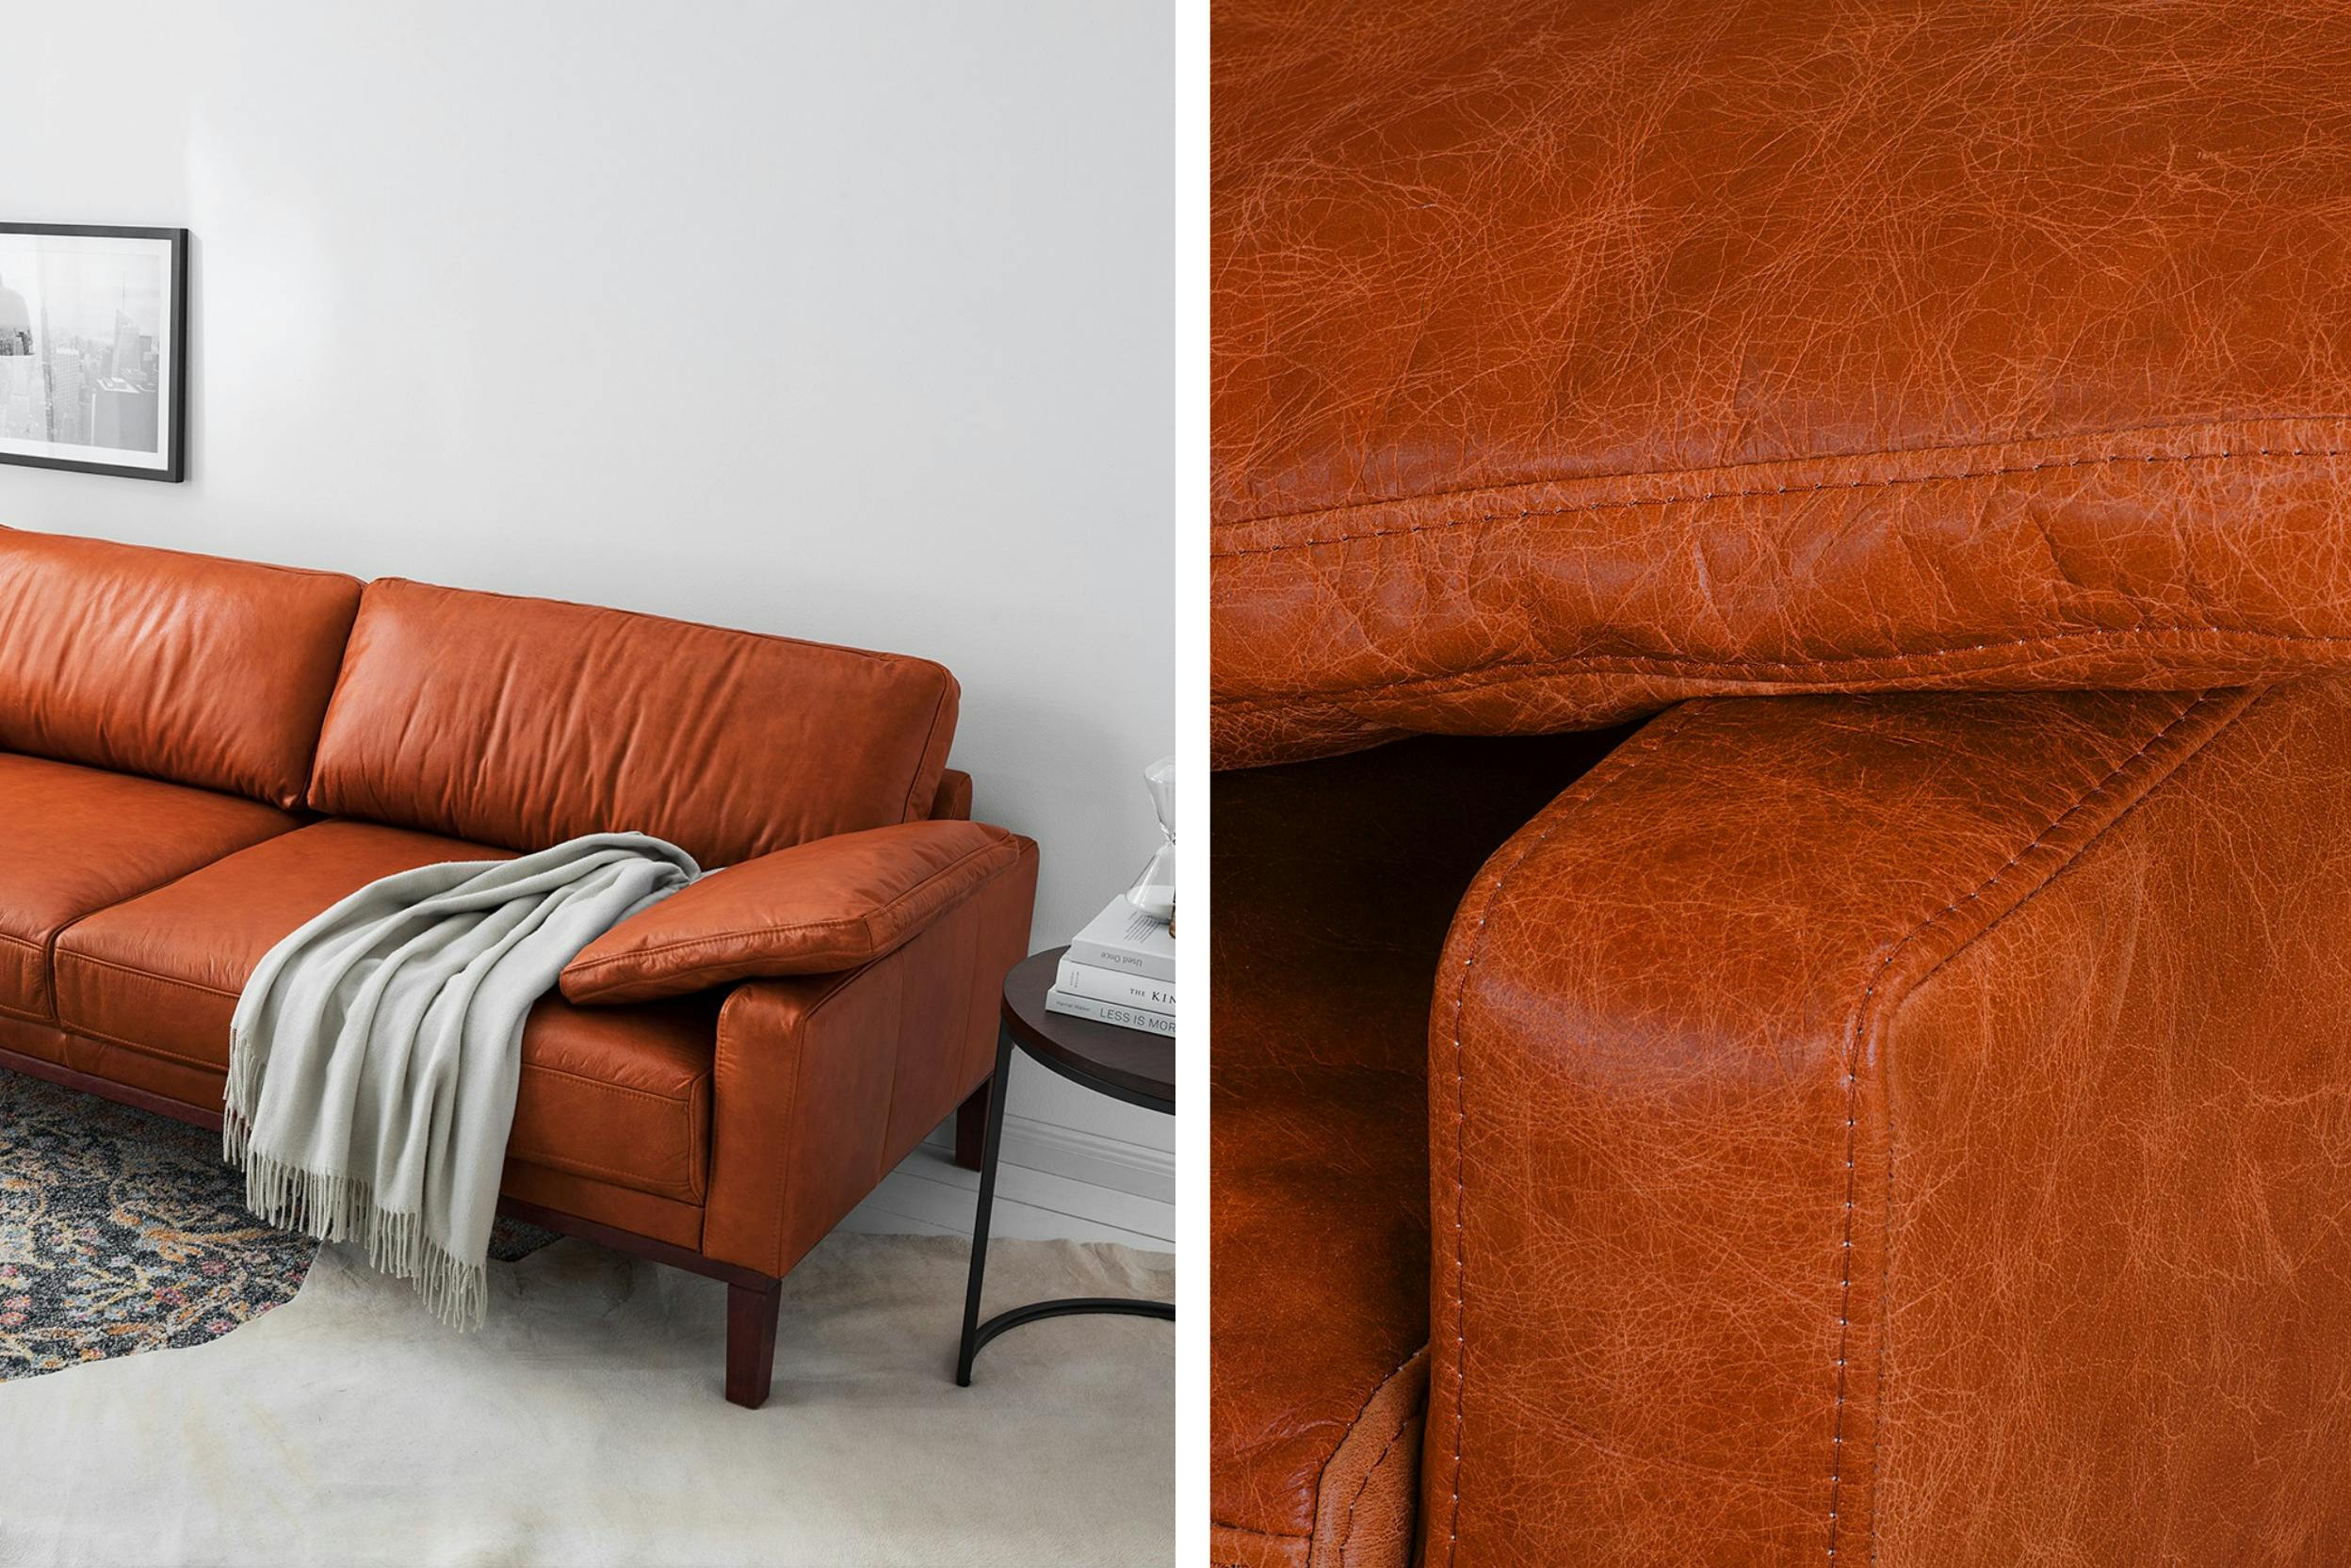 Comment entretenir et réparer un canapé en cuir craquelé ?